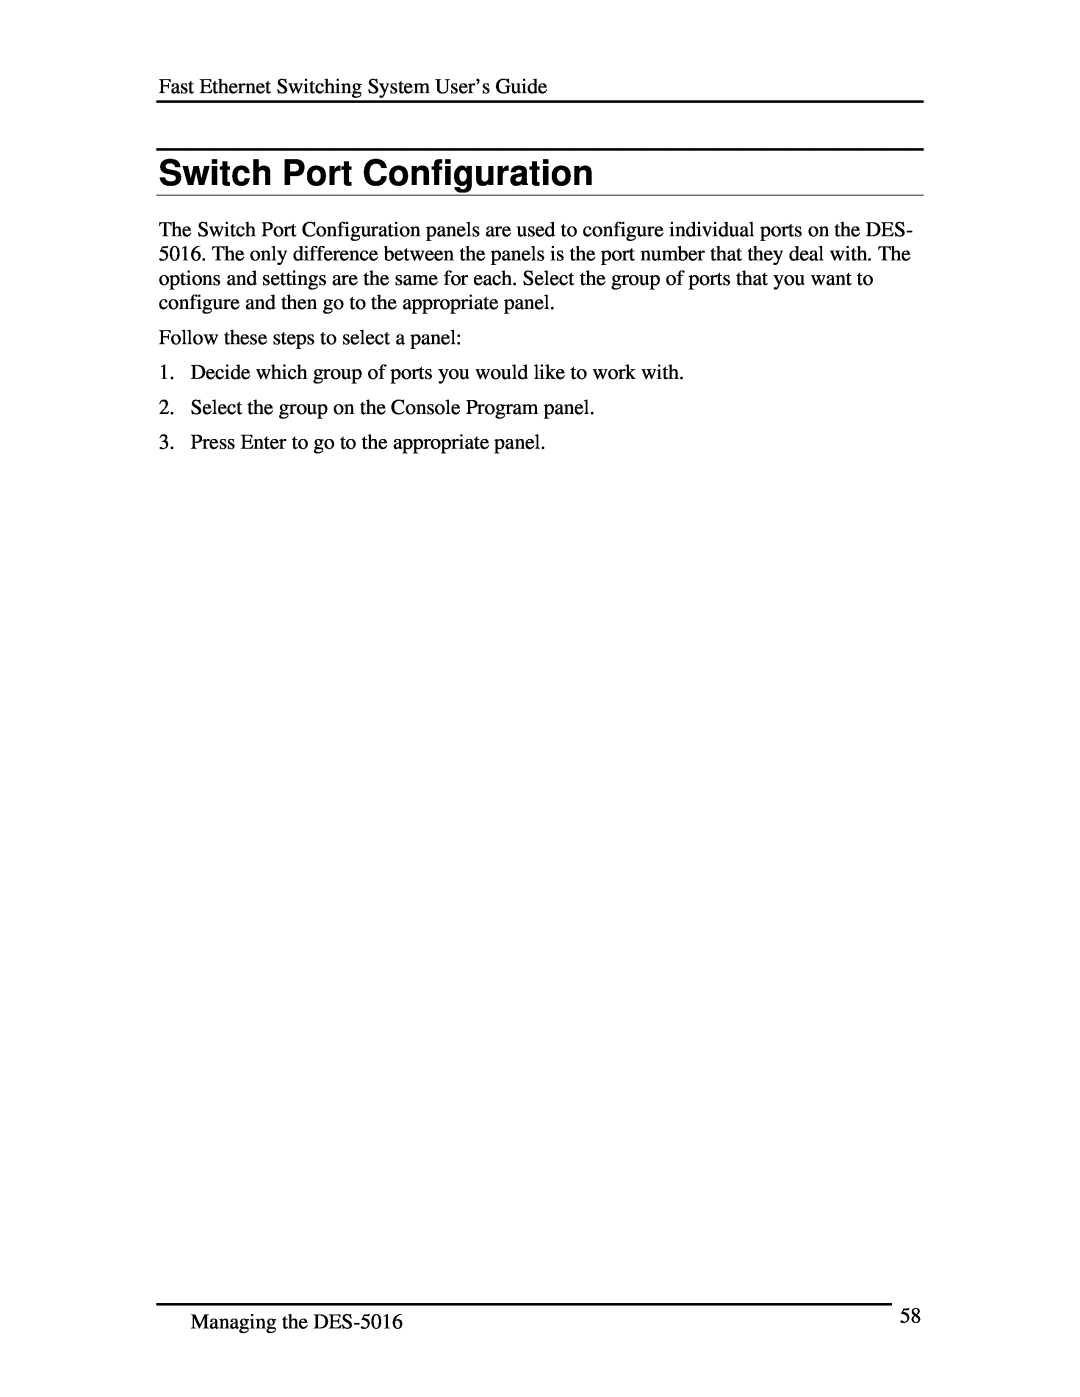 D-Link DES-5016 manual Switch Port Configuration 